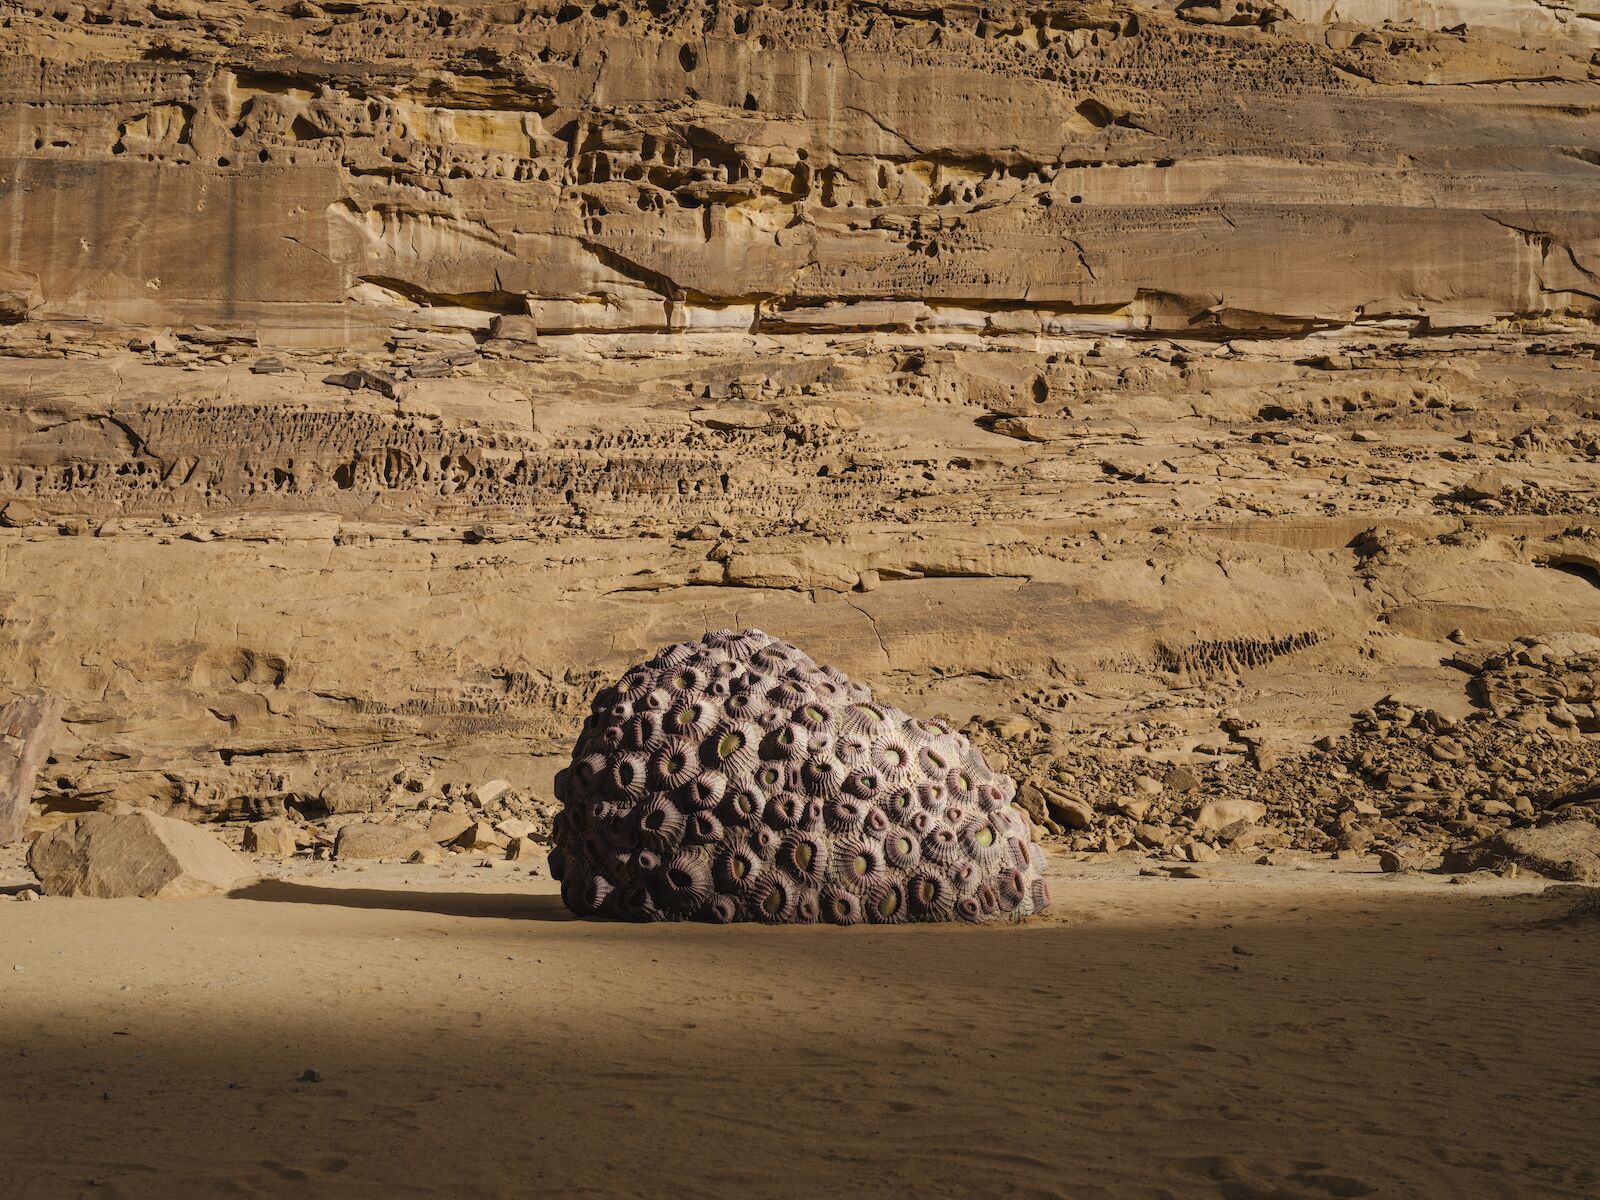 Art installation in the Saudi Arabian desert for Desert X 2022.